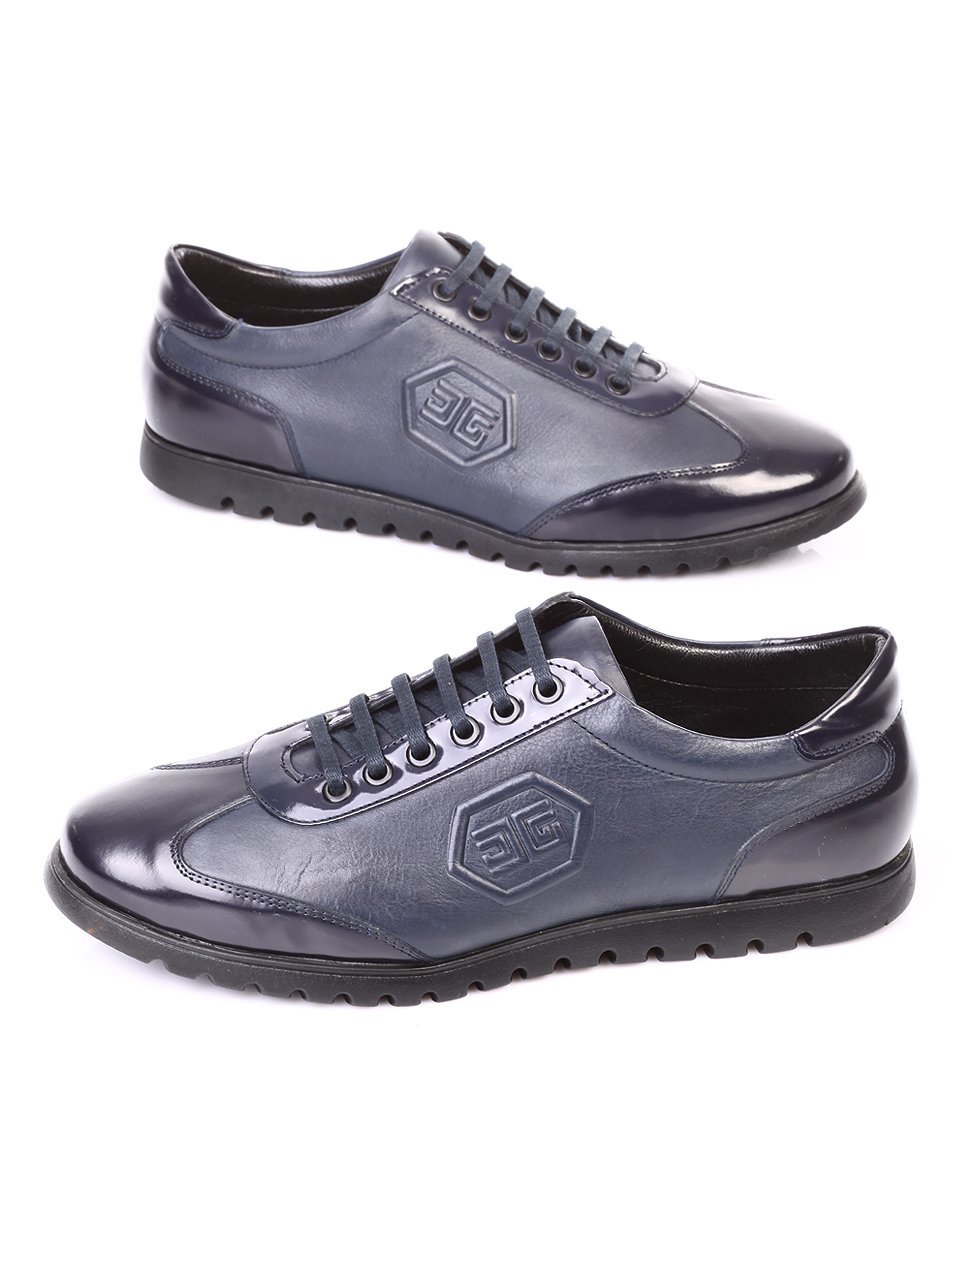 Ежедневни мъжки обувки от естествена кожа в синьо 7AT-171131 blue